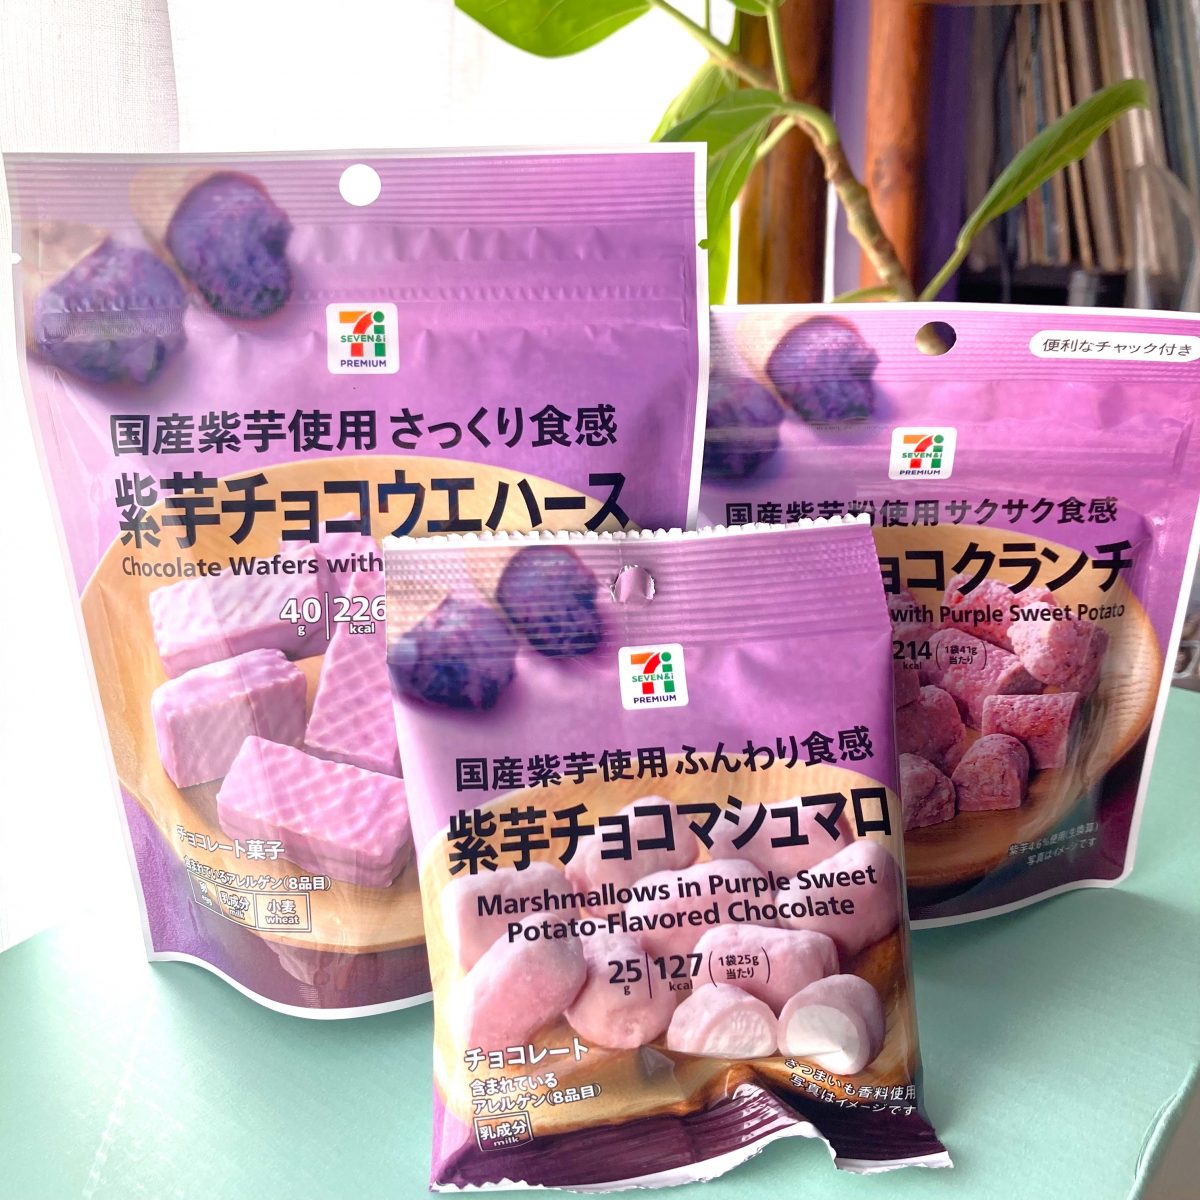 セブンイレブン、紫芋お菓子